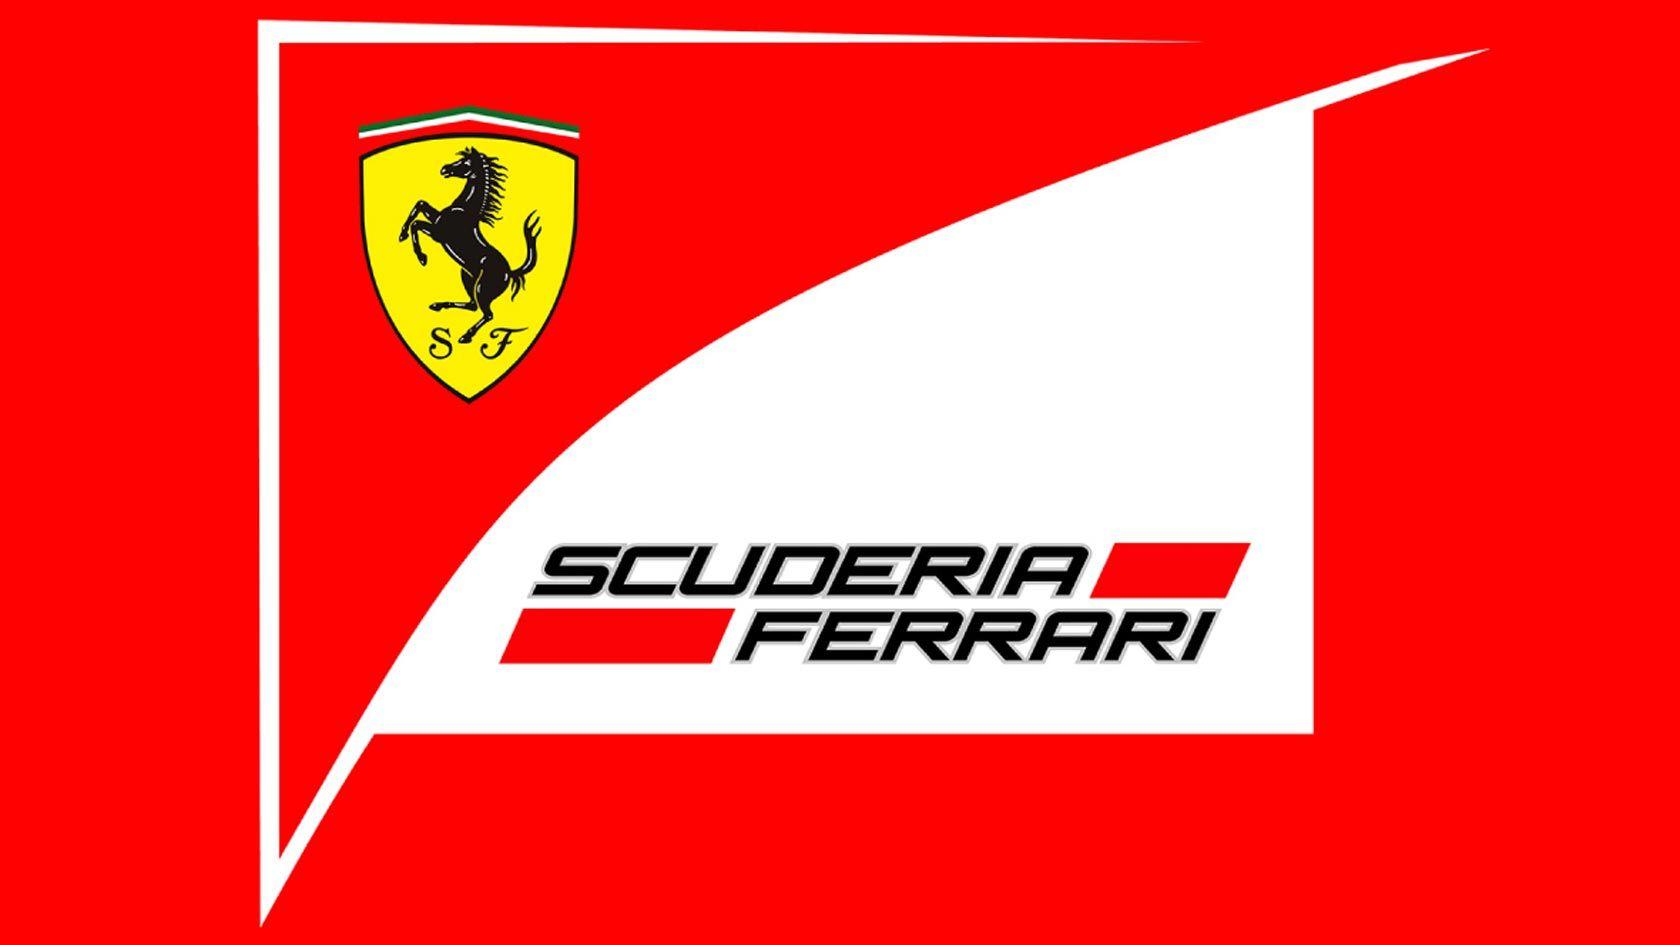 Ferrari Image Scuderia HD